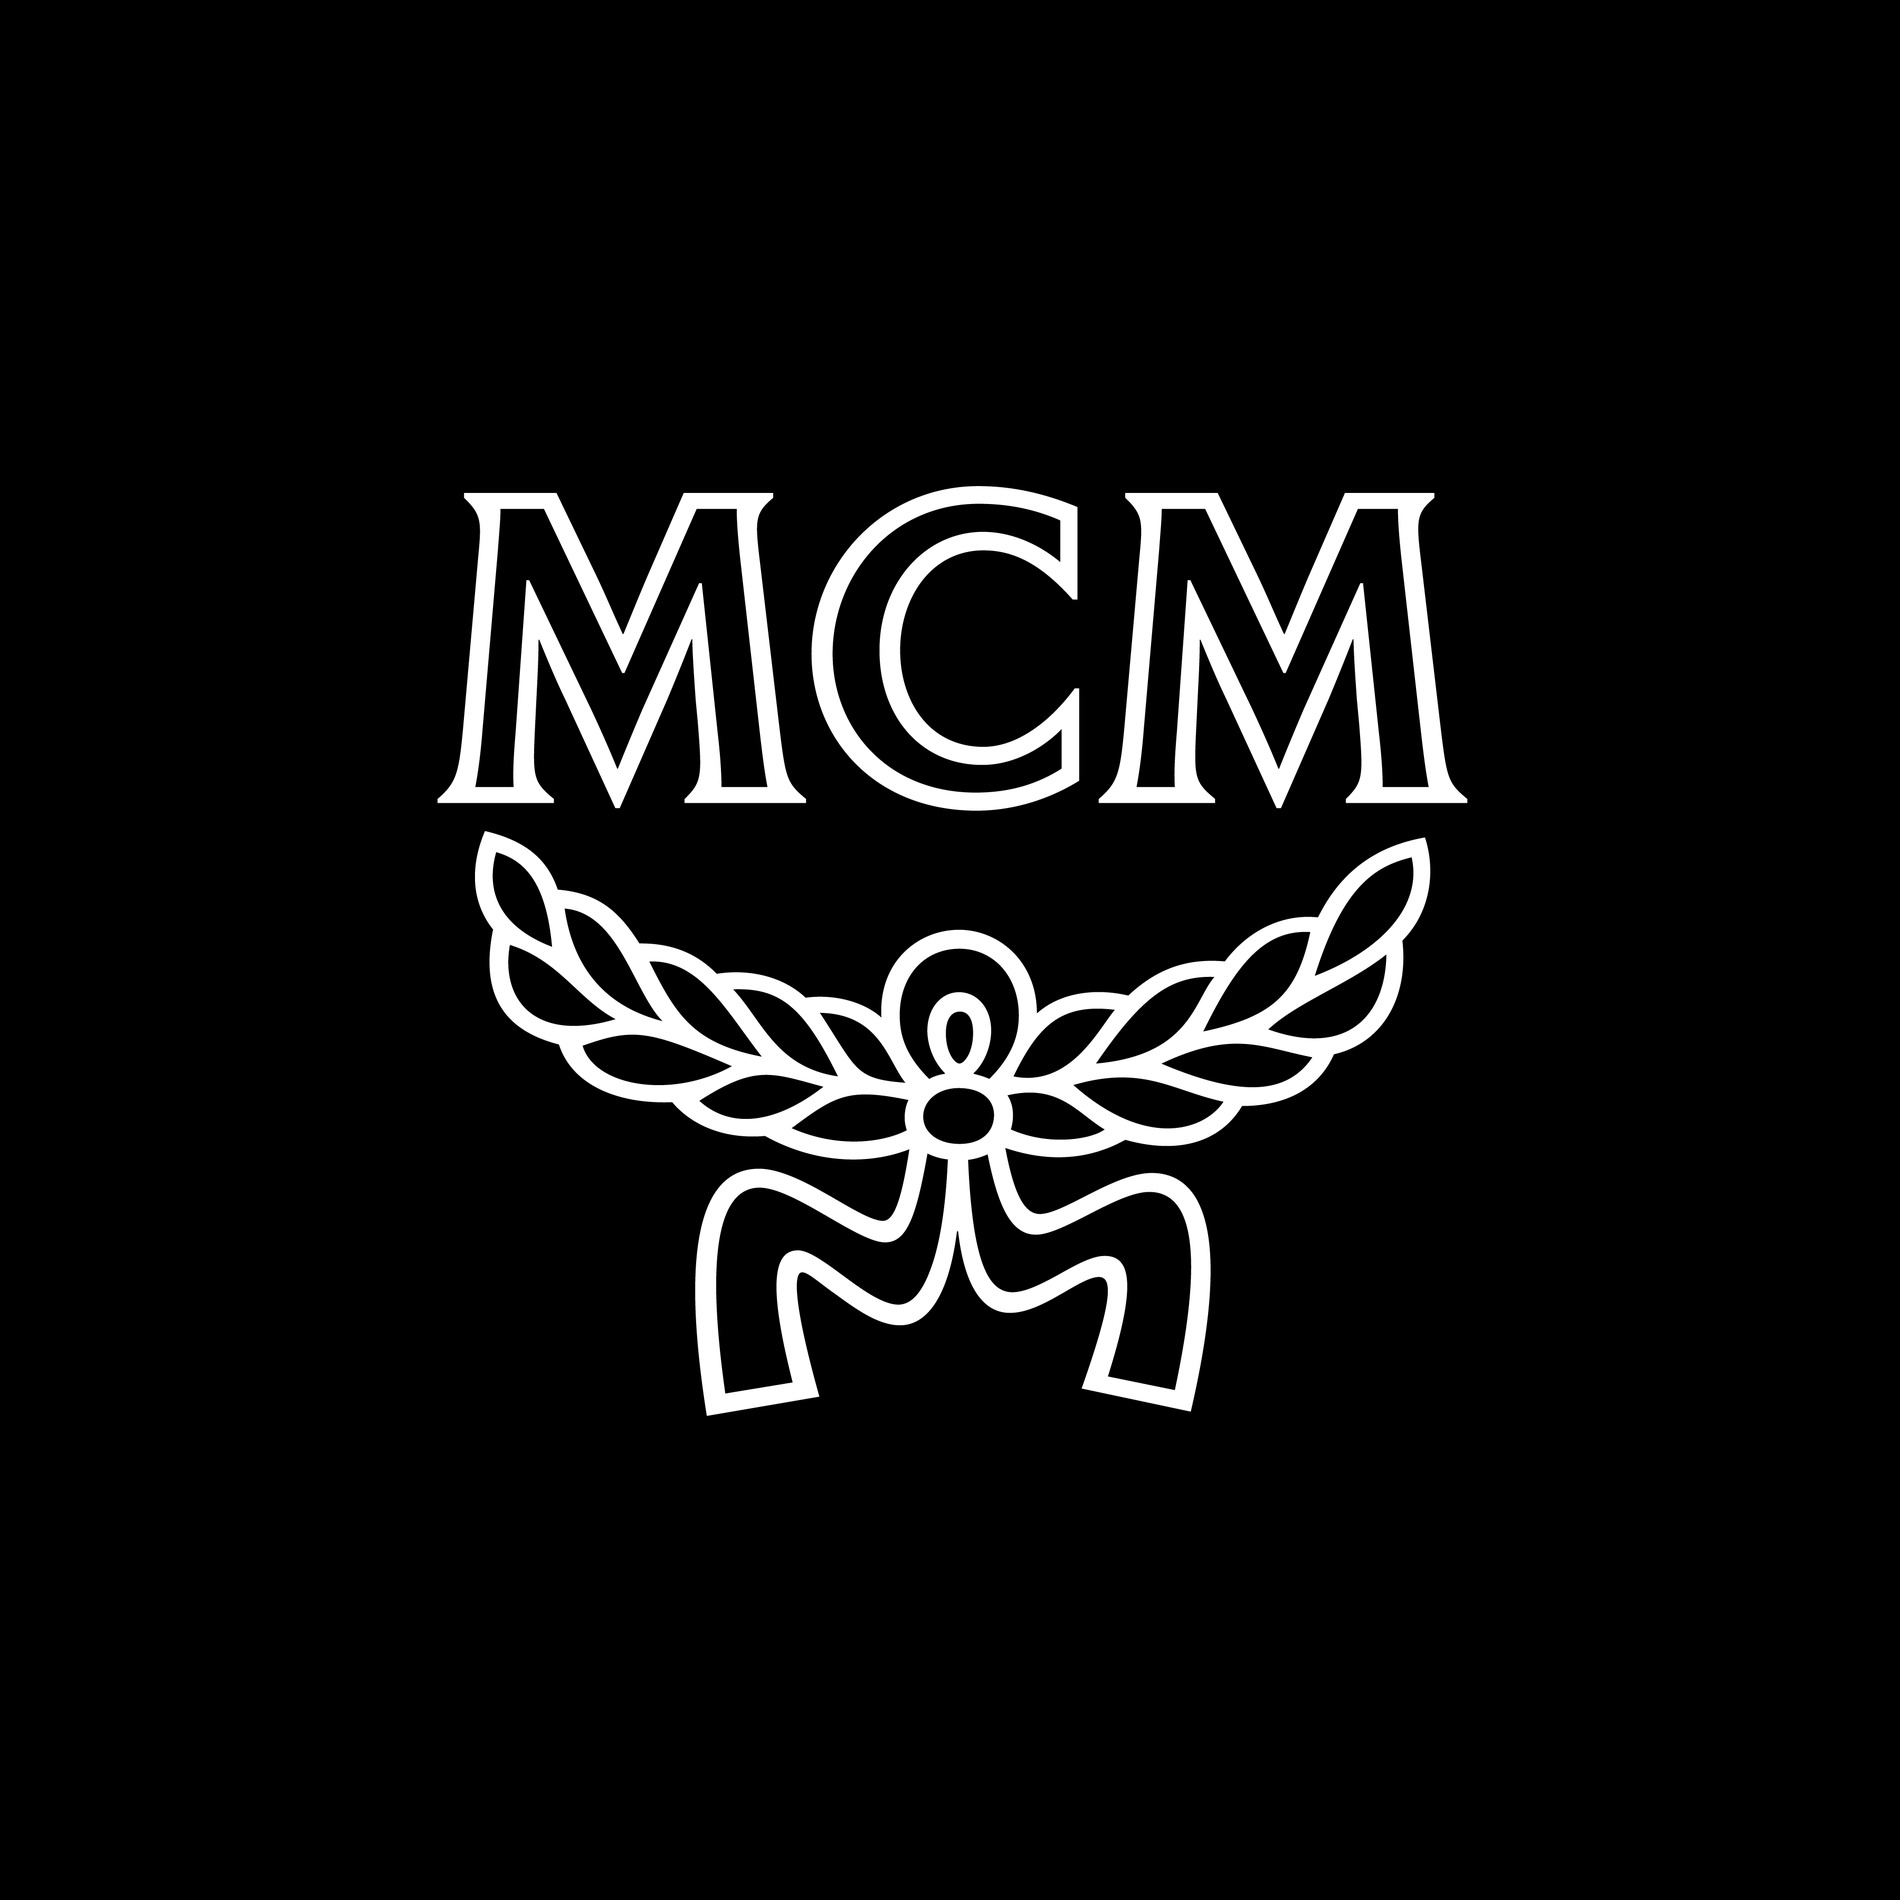 designer MCM logo svg, MCM logo pattern svg, MCM svg logo, p - Inspire  Uplift